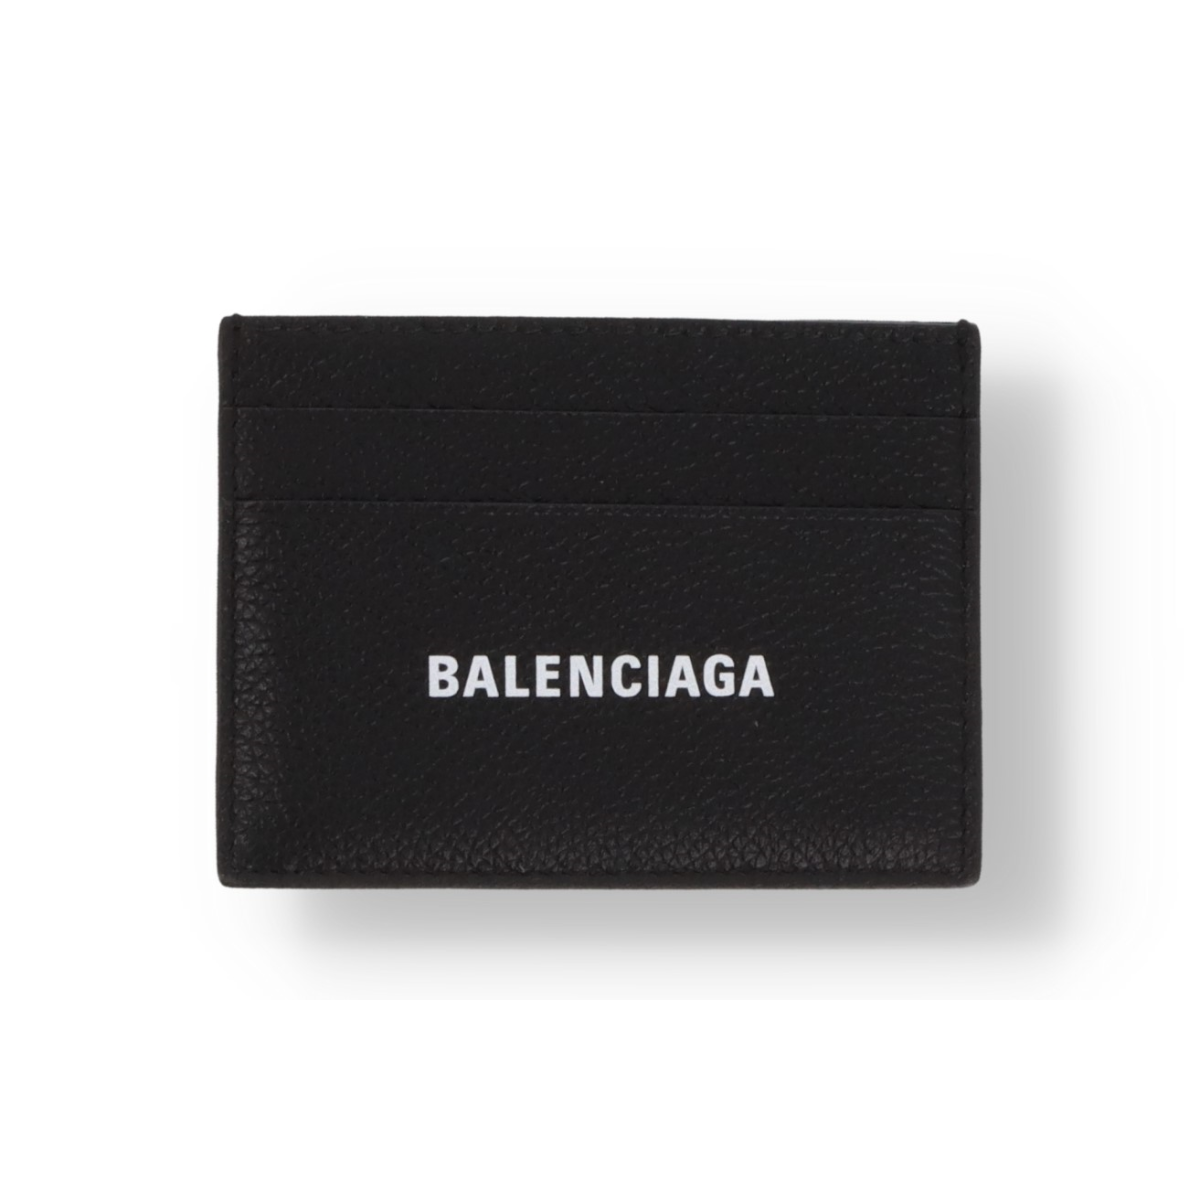 Porte-cartes Balenciaga Cash